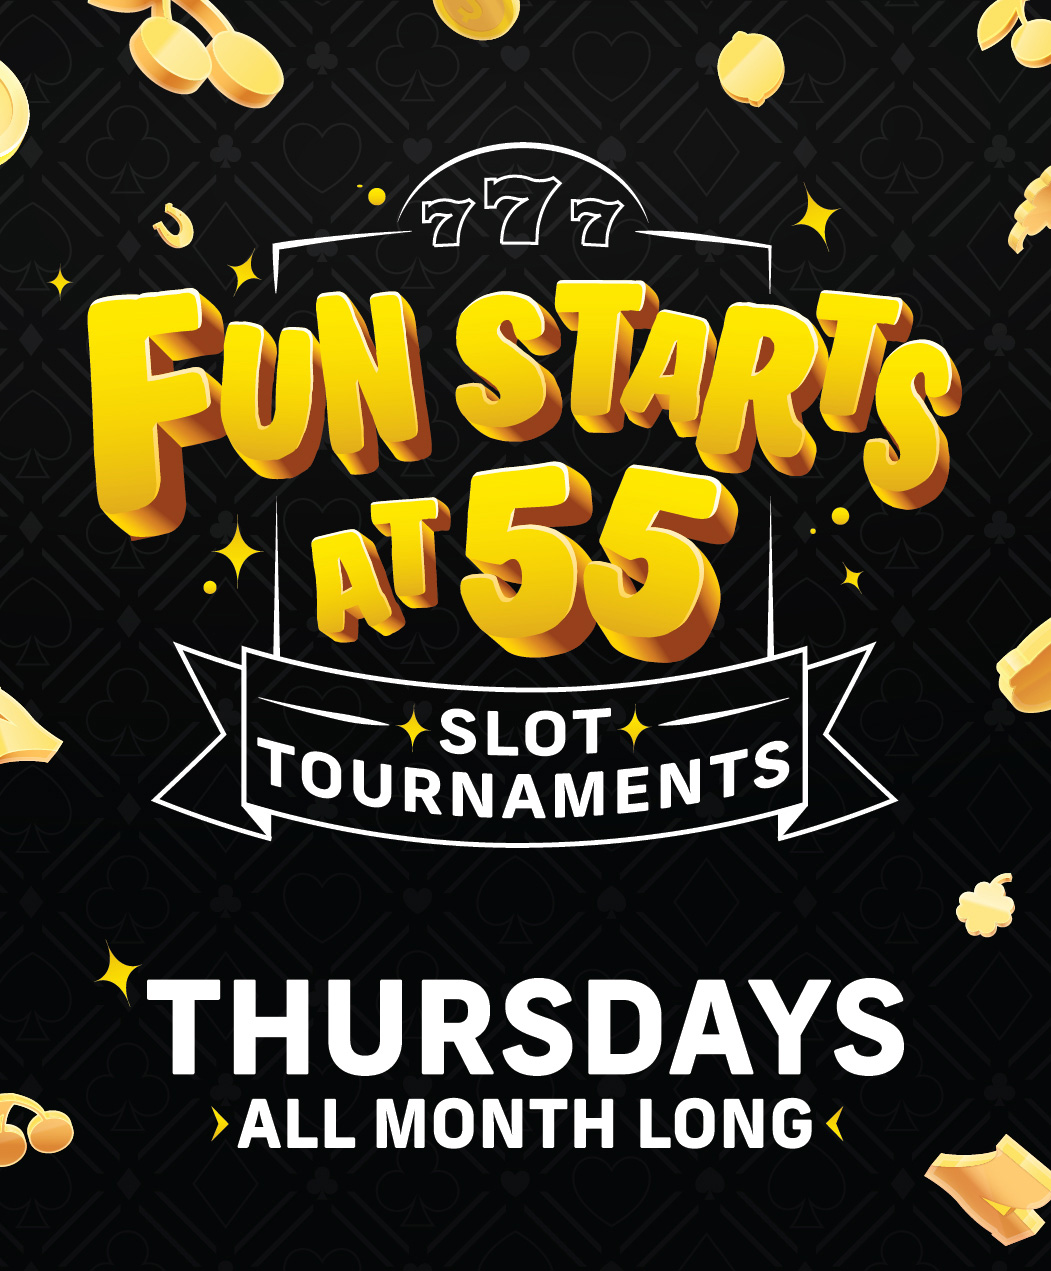 Fun Starts at 55 Slot Tournaments